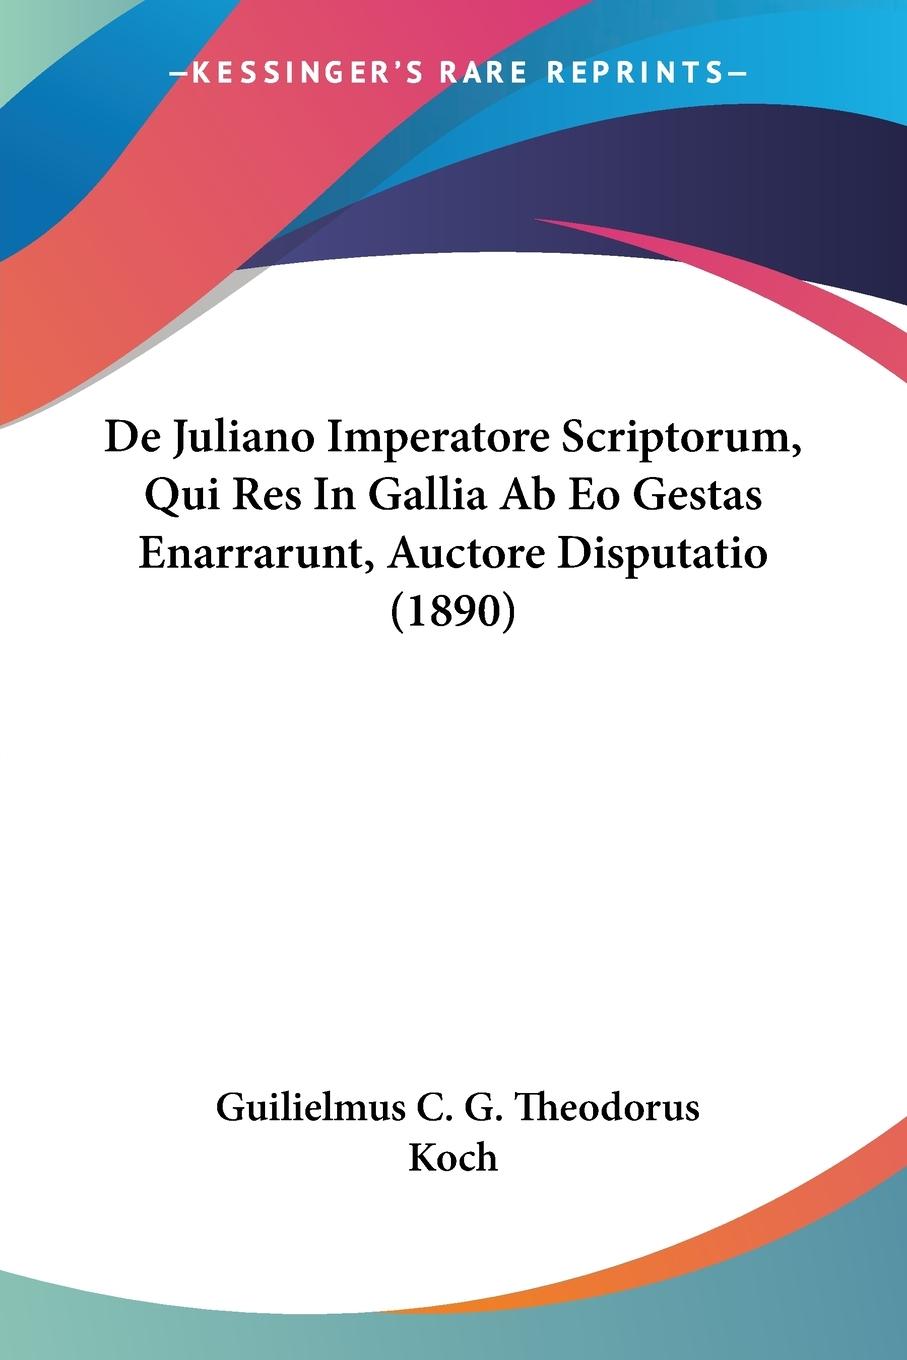 De Juliano Imperatore Scriptorum, Qui Res In Gallia Ab Eo Gestas Enarrarunt, Auctore Disputatio (1890) - Koch, Guilielmus C. G. Theodorus